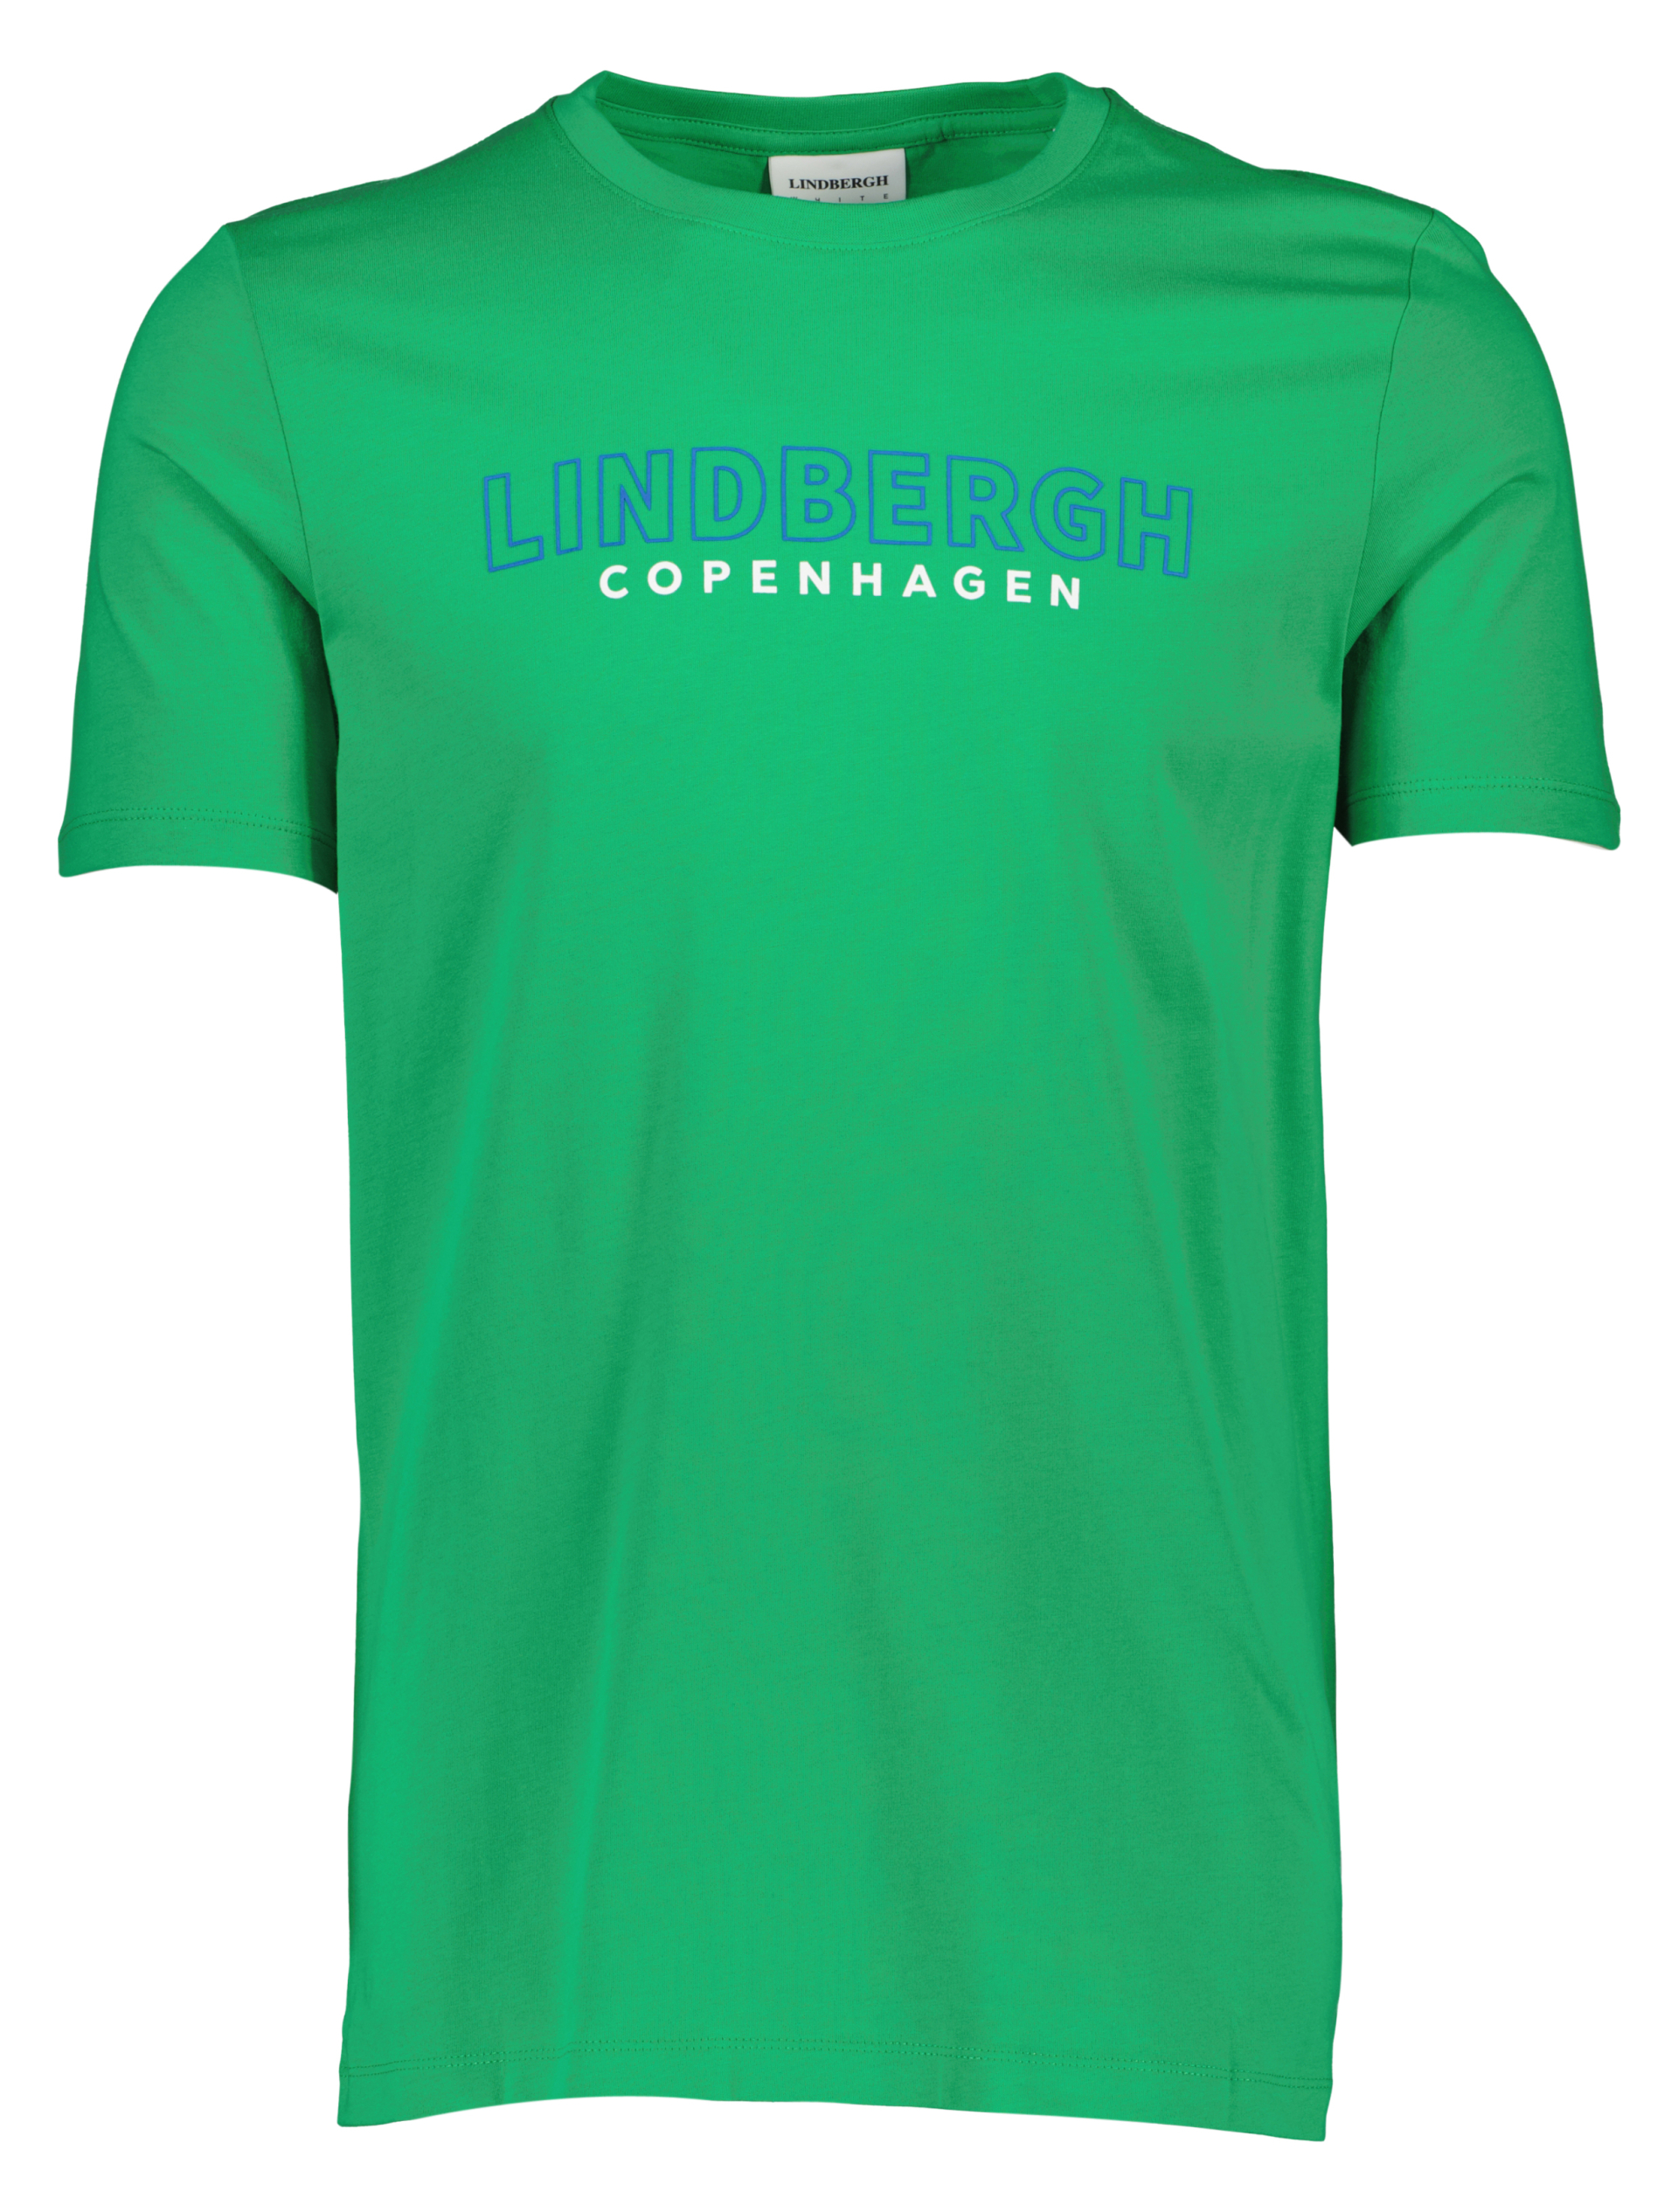 Lindbergh T-Shirt grün / bright green